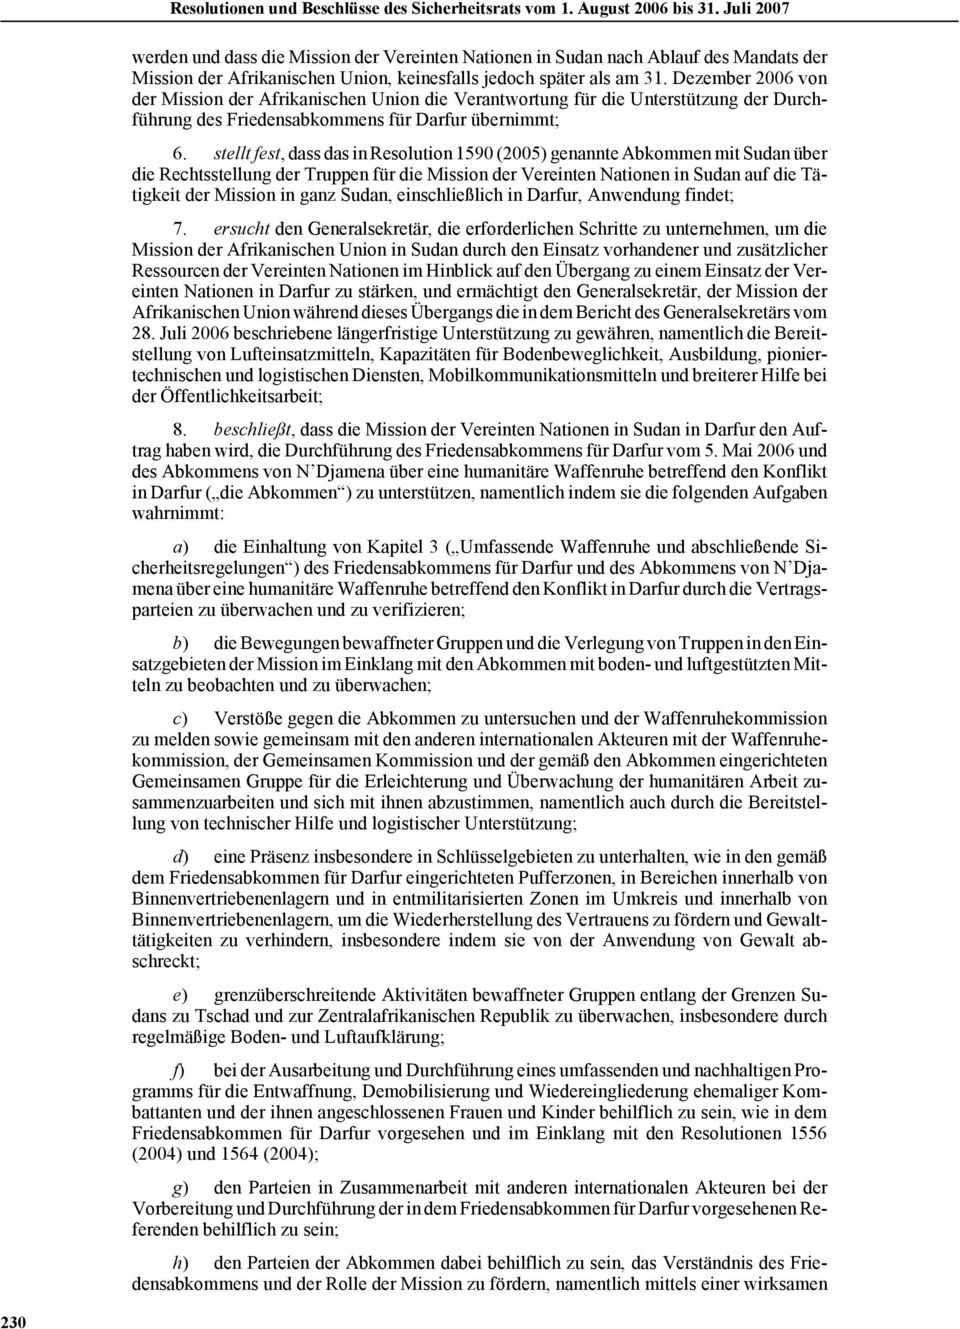 stellt fest, dass das in Resolution 1590 (2005) genannte Abkommen mit Sudan über die Rechtsstellung der Truppen für die Mission der Vereinten Nationen in Sudan auf die Tätigkeit der Mission in ganz